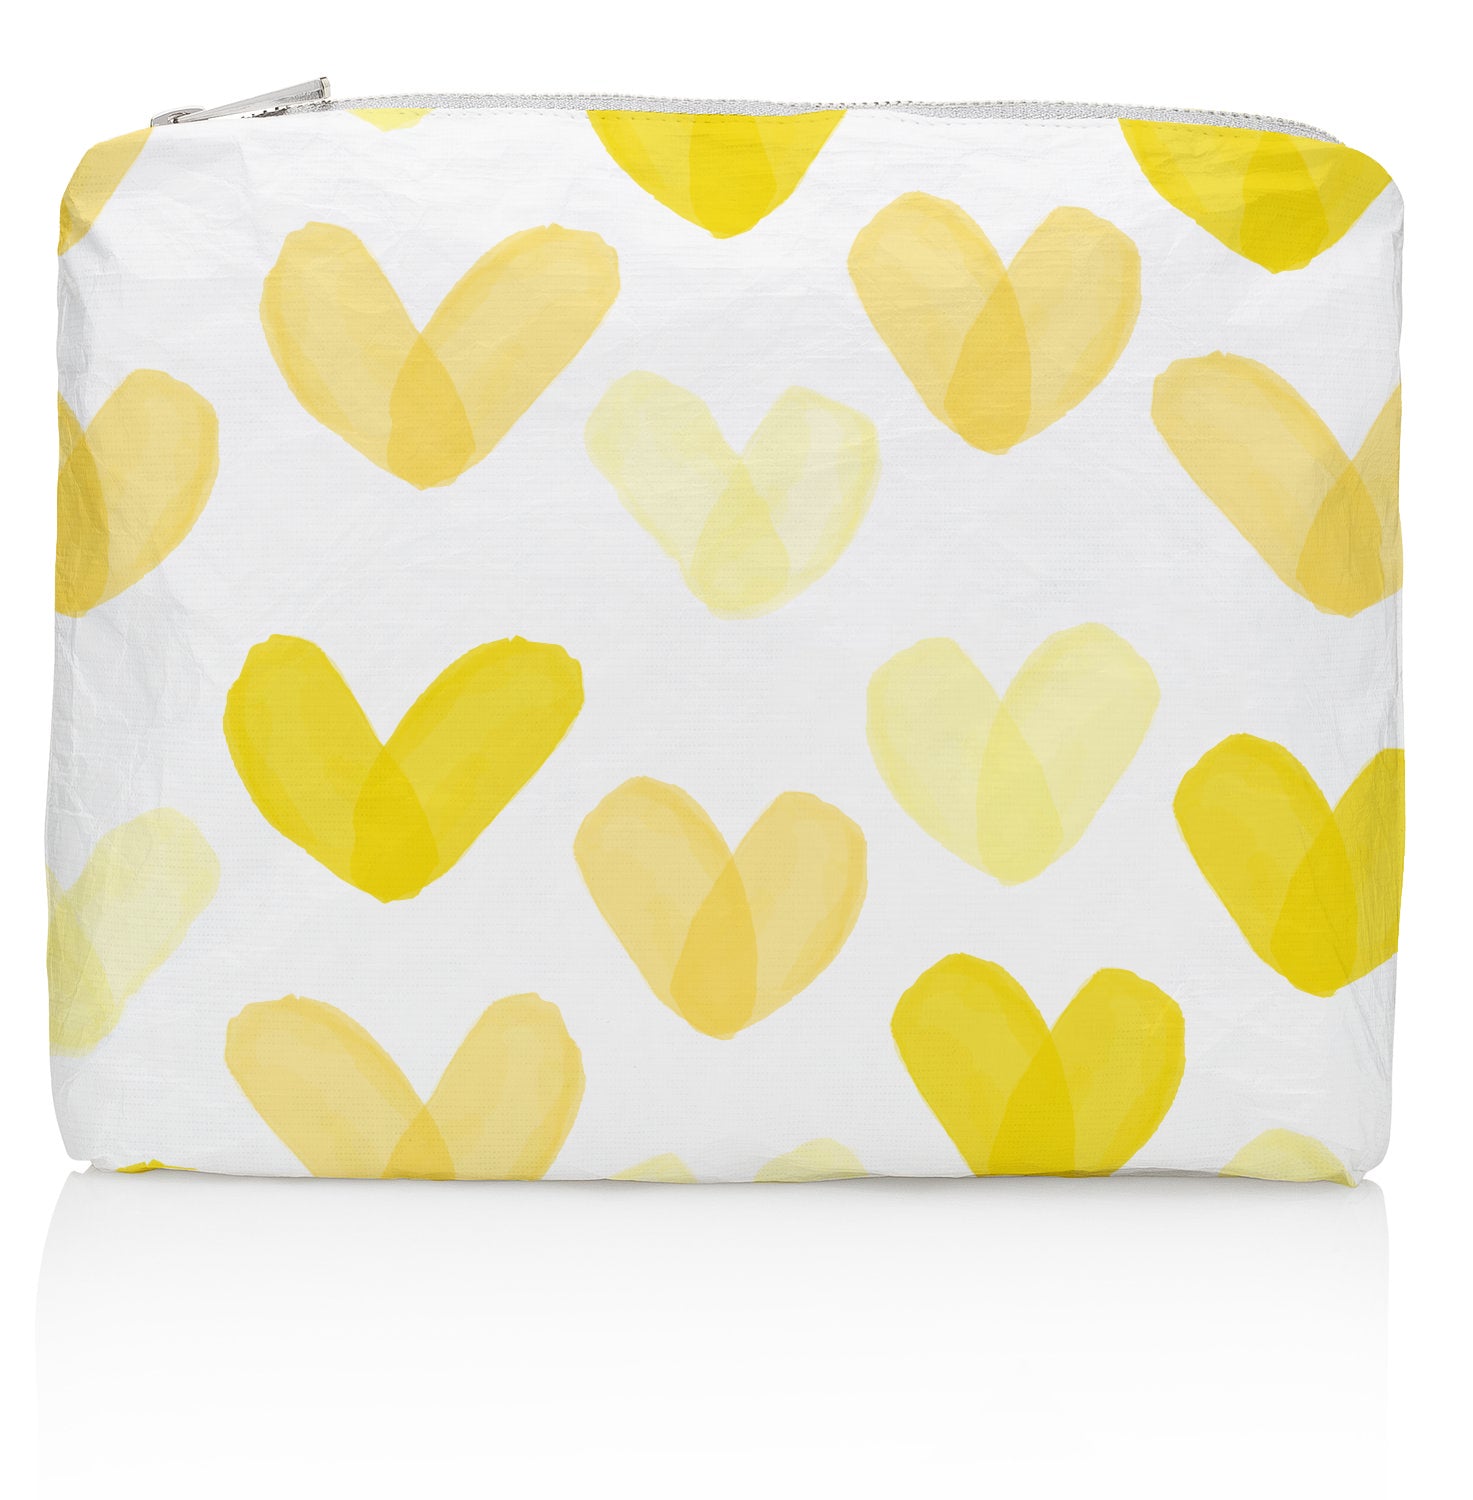 Medium Zipper Pack in the "Language of Love" Sunshine Yellow Heart Print